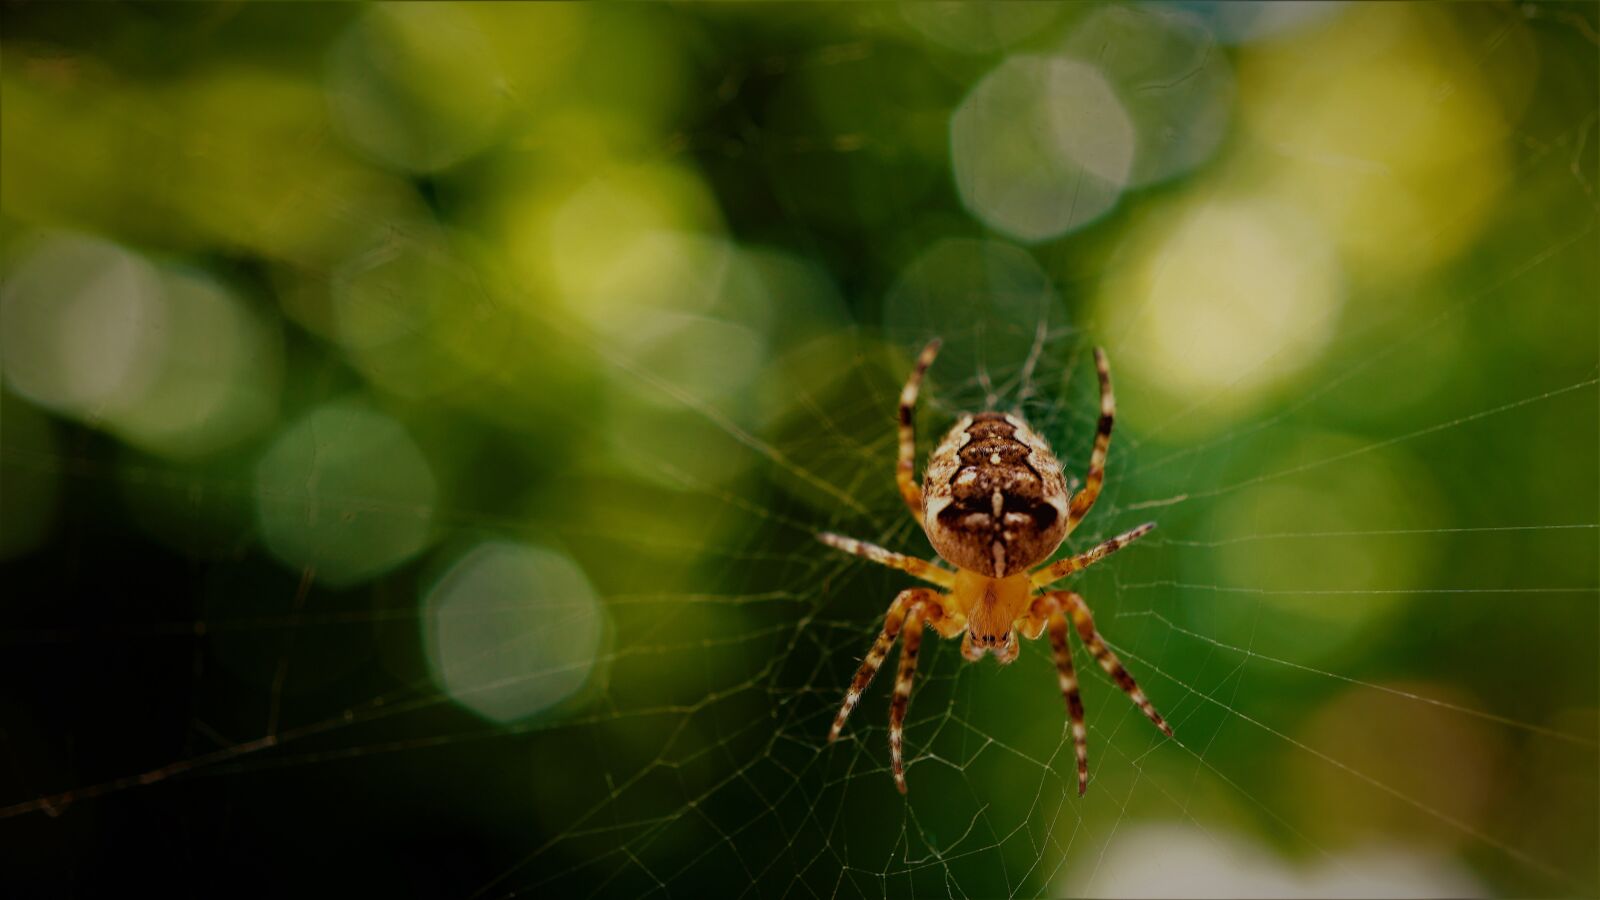 Sony a6000 + Sony E 30mm F3.5 Macro sample photo. Araneus, spider, cobweb photography